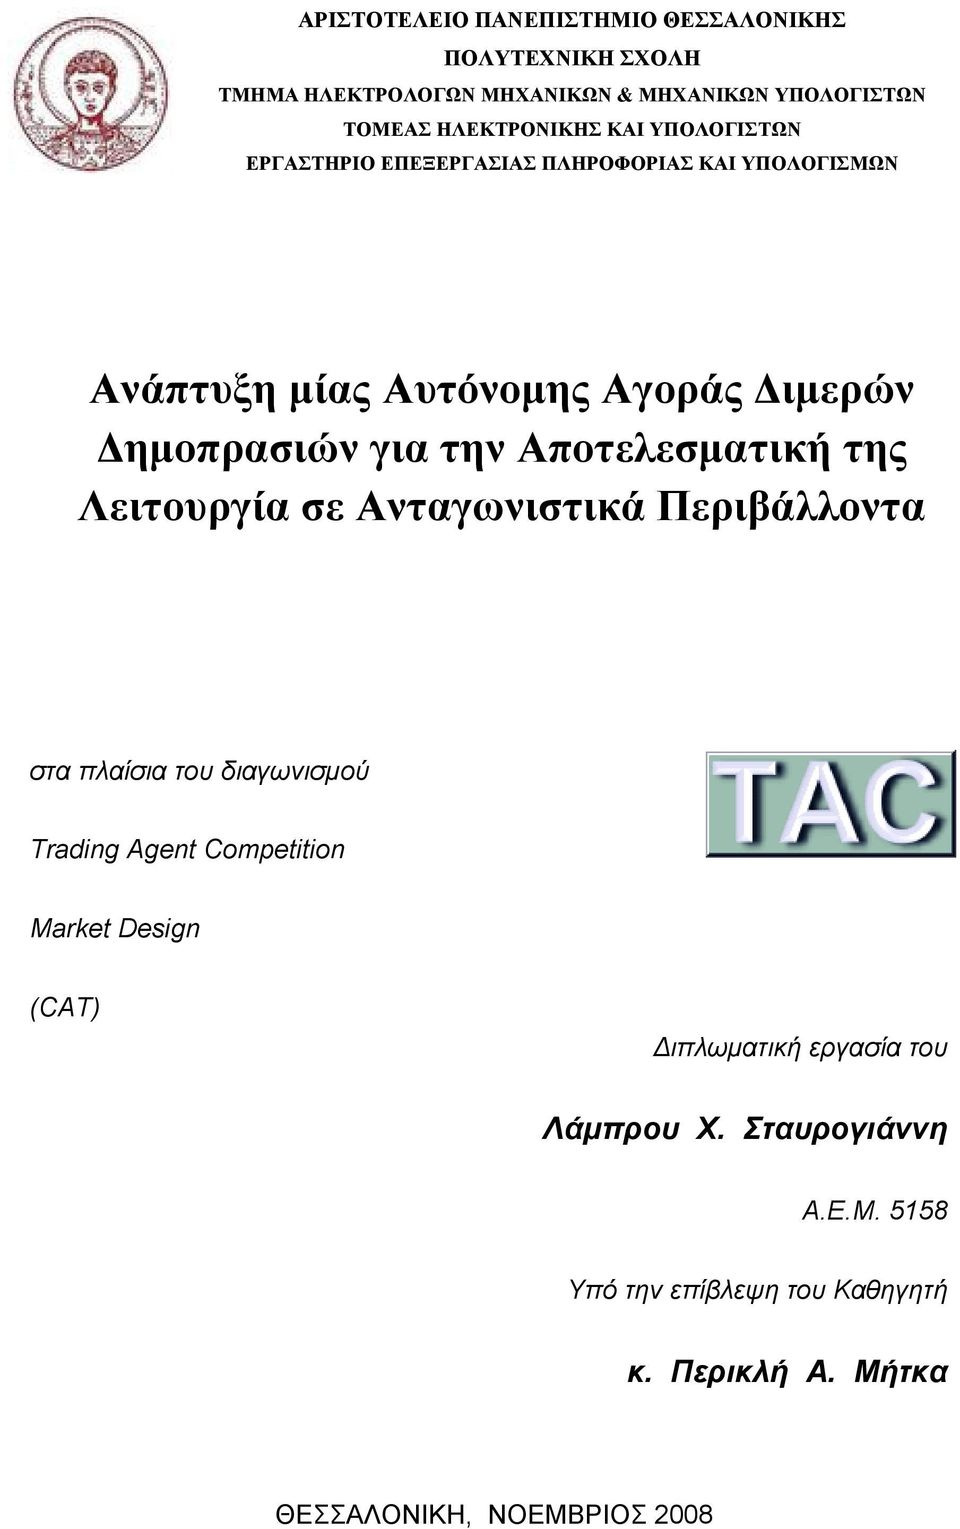 Αποτελεσματική της Λειτουργία σε Ανταγωνιστικά Περιβάλλοντα στα πλαίσια του διαγωνισμού Trading Agent Competition Market Design